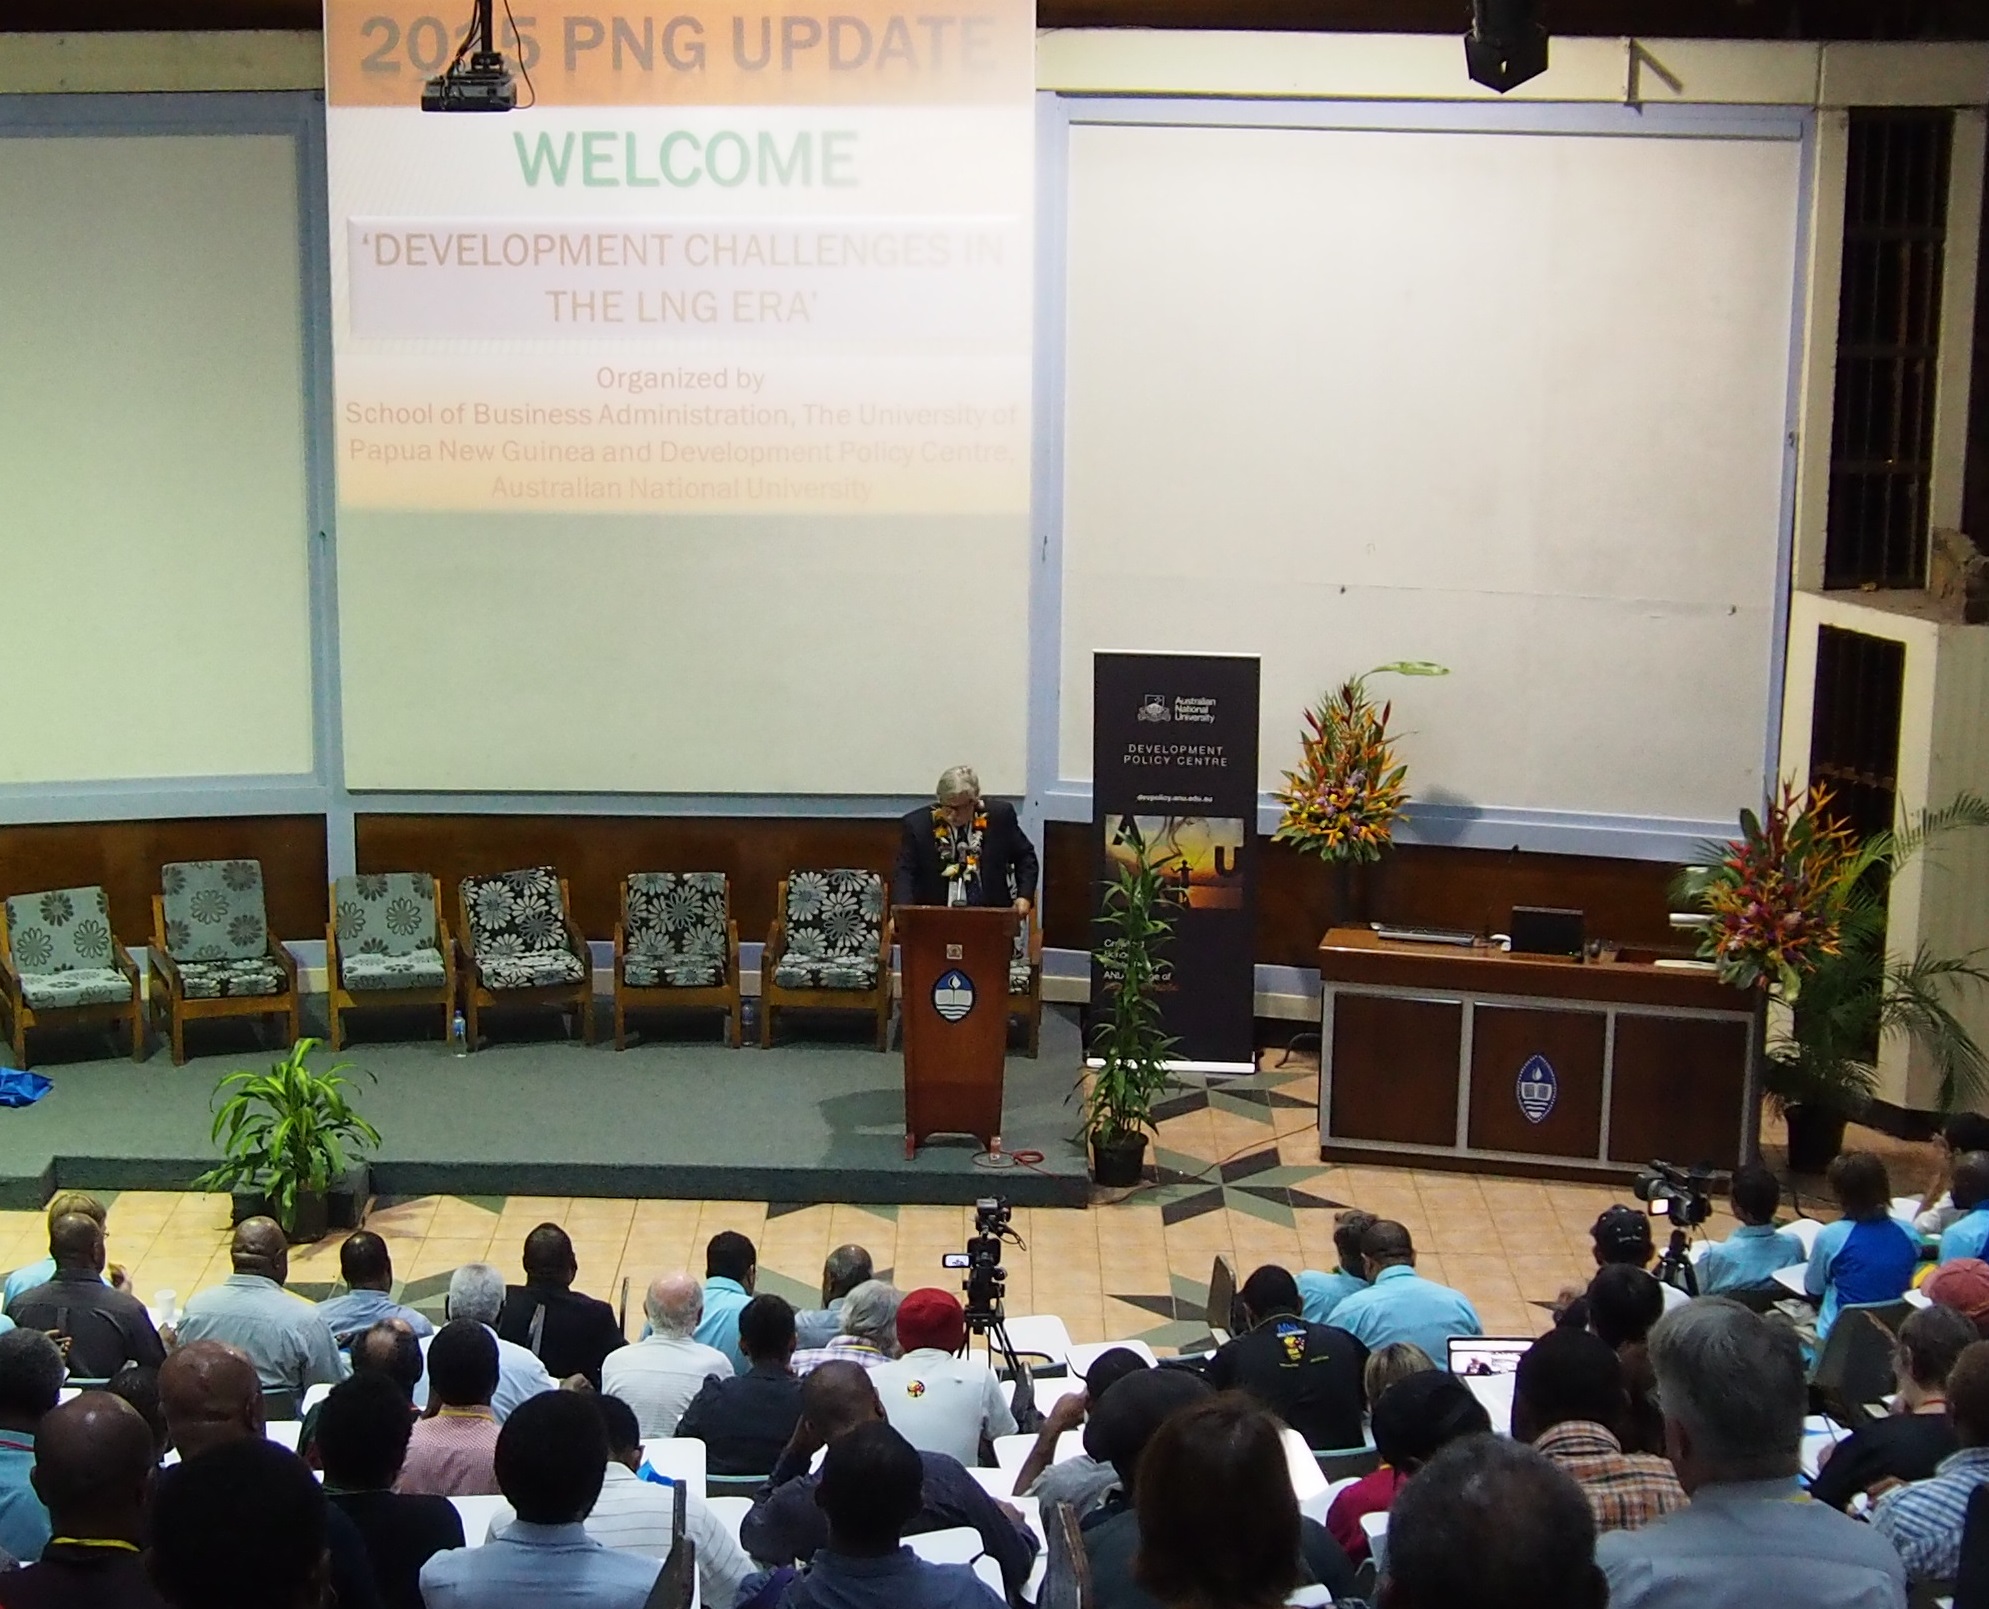 Jim Adams presenting at the 2015 PNG Update